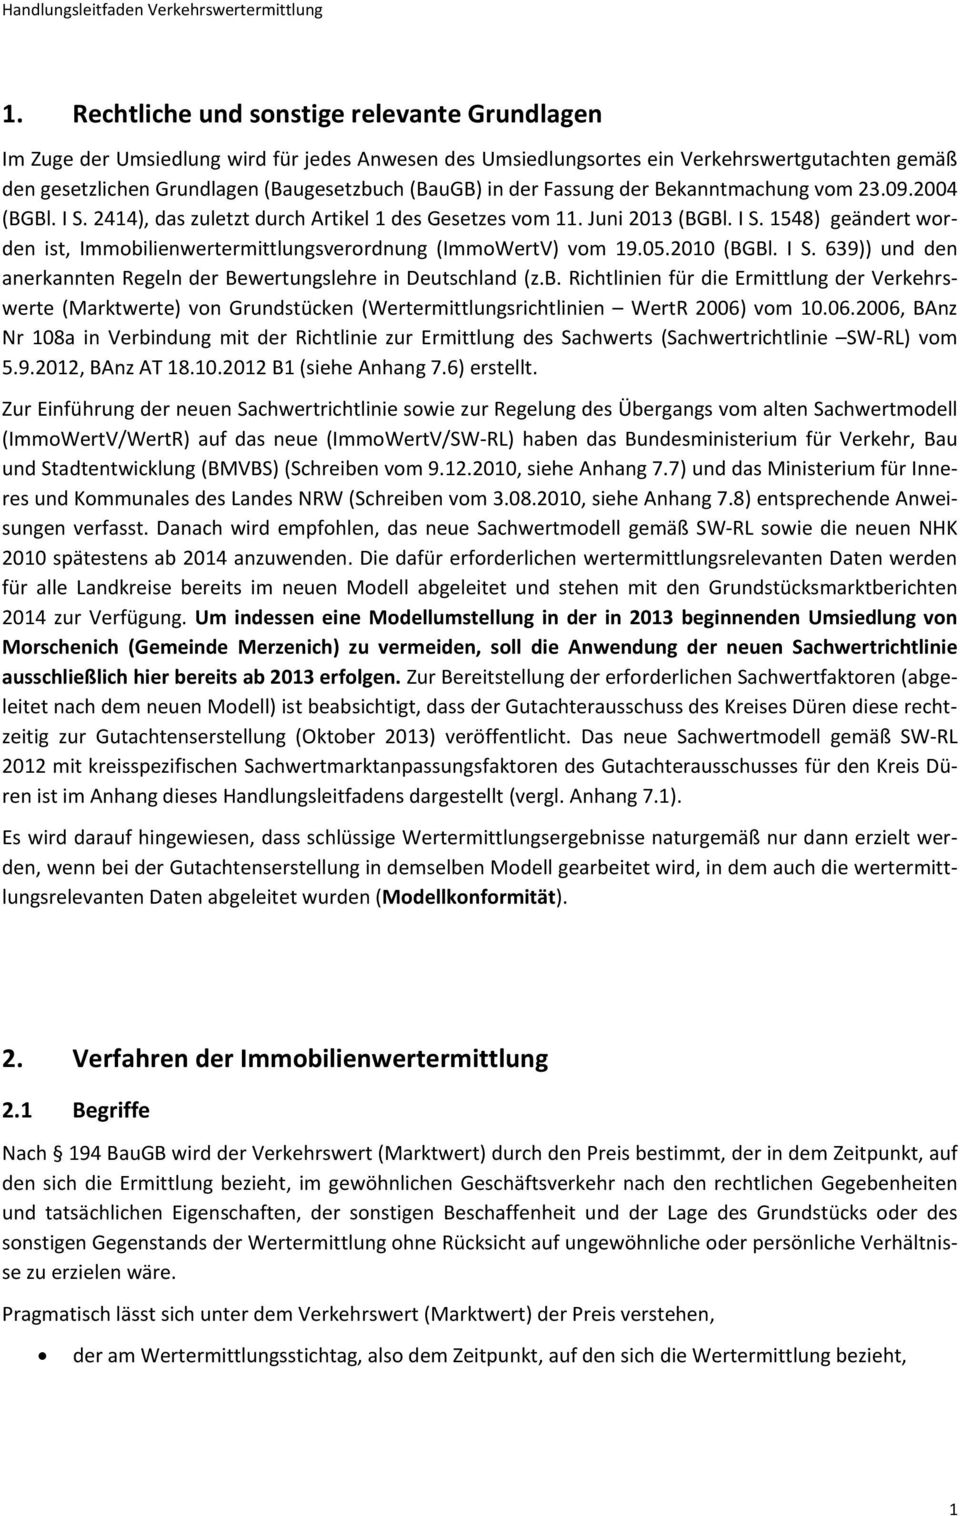 05.2010 (BGBl. I S. 639)) und den anerkannten Regeln der Bewertungslehre in Deutschland (z.b.